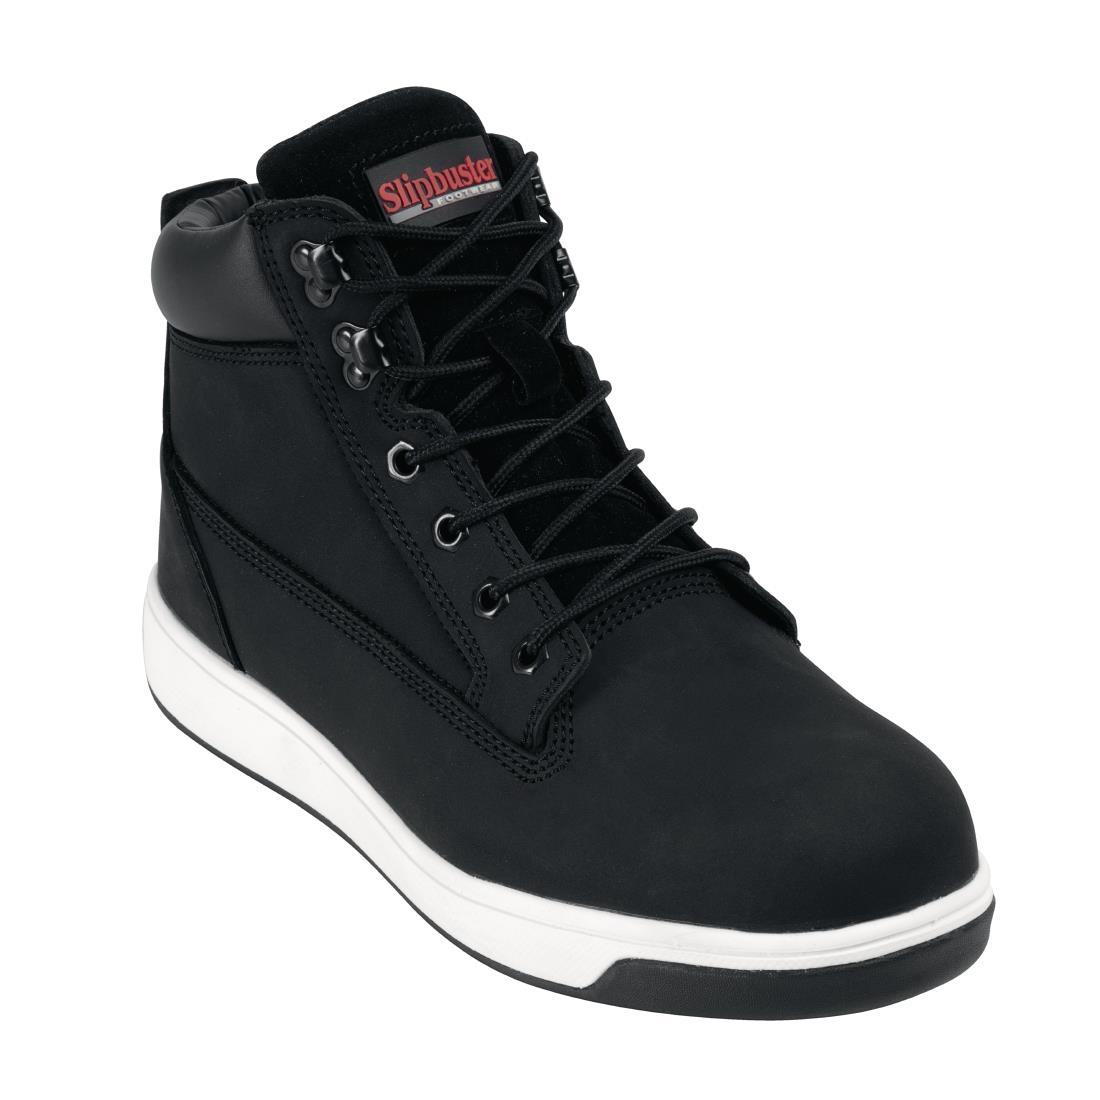 Slipbuster Sneaker Boots Black 44 - BB422-44  - 1